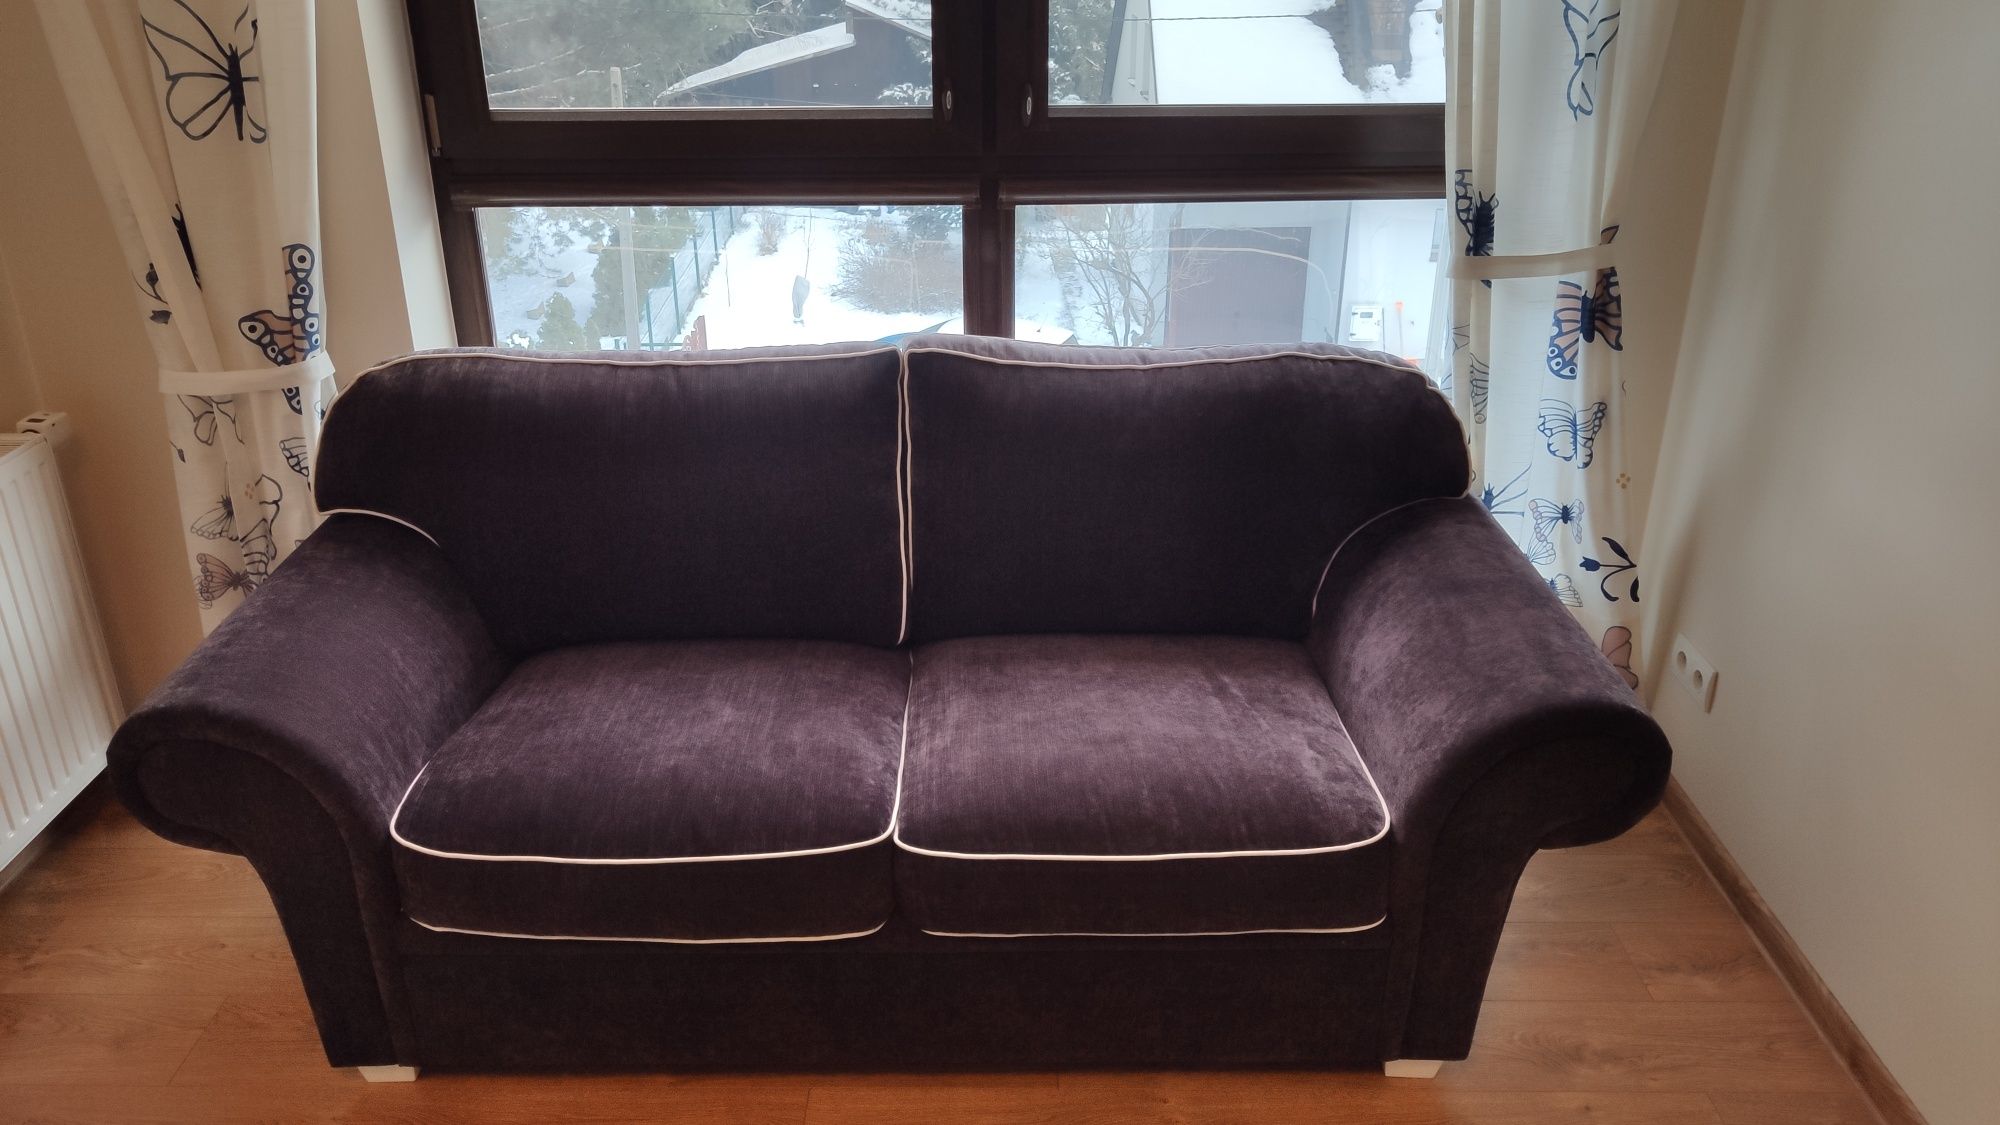 Jak nowa stylowa sofa z funkcją spania. Za mniej niż połowa ceny!